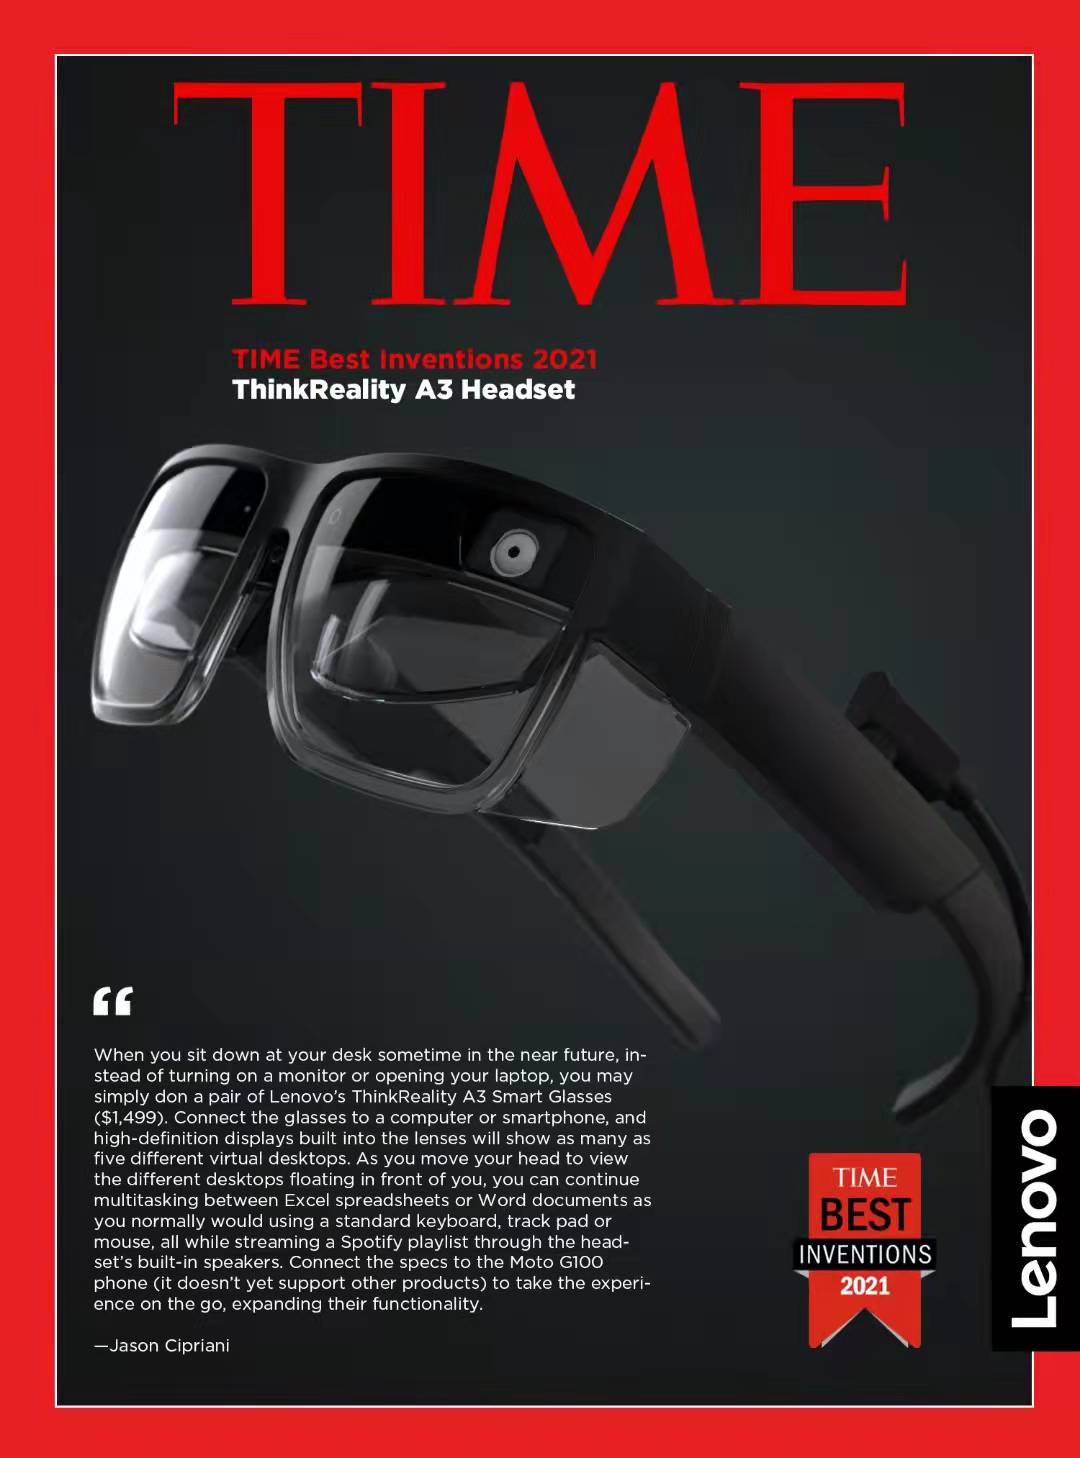 联想ThinkReality A3智能眼镜获评美国《时代》 周刊“2021年的100项最佳发明”榜单